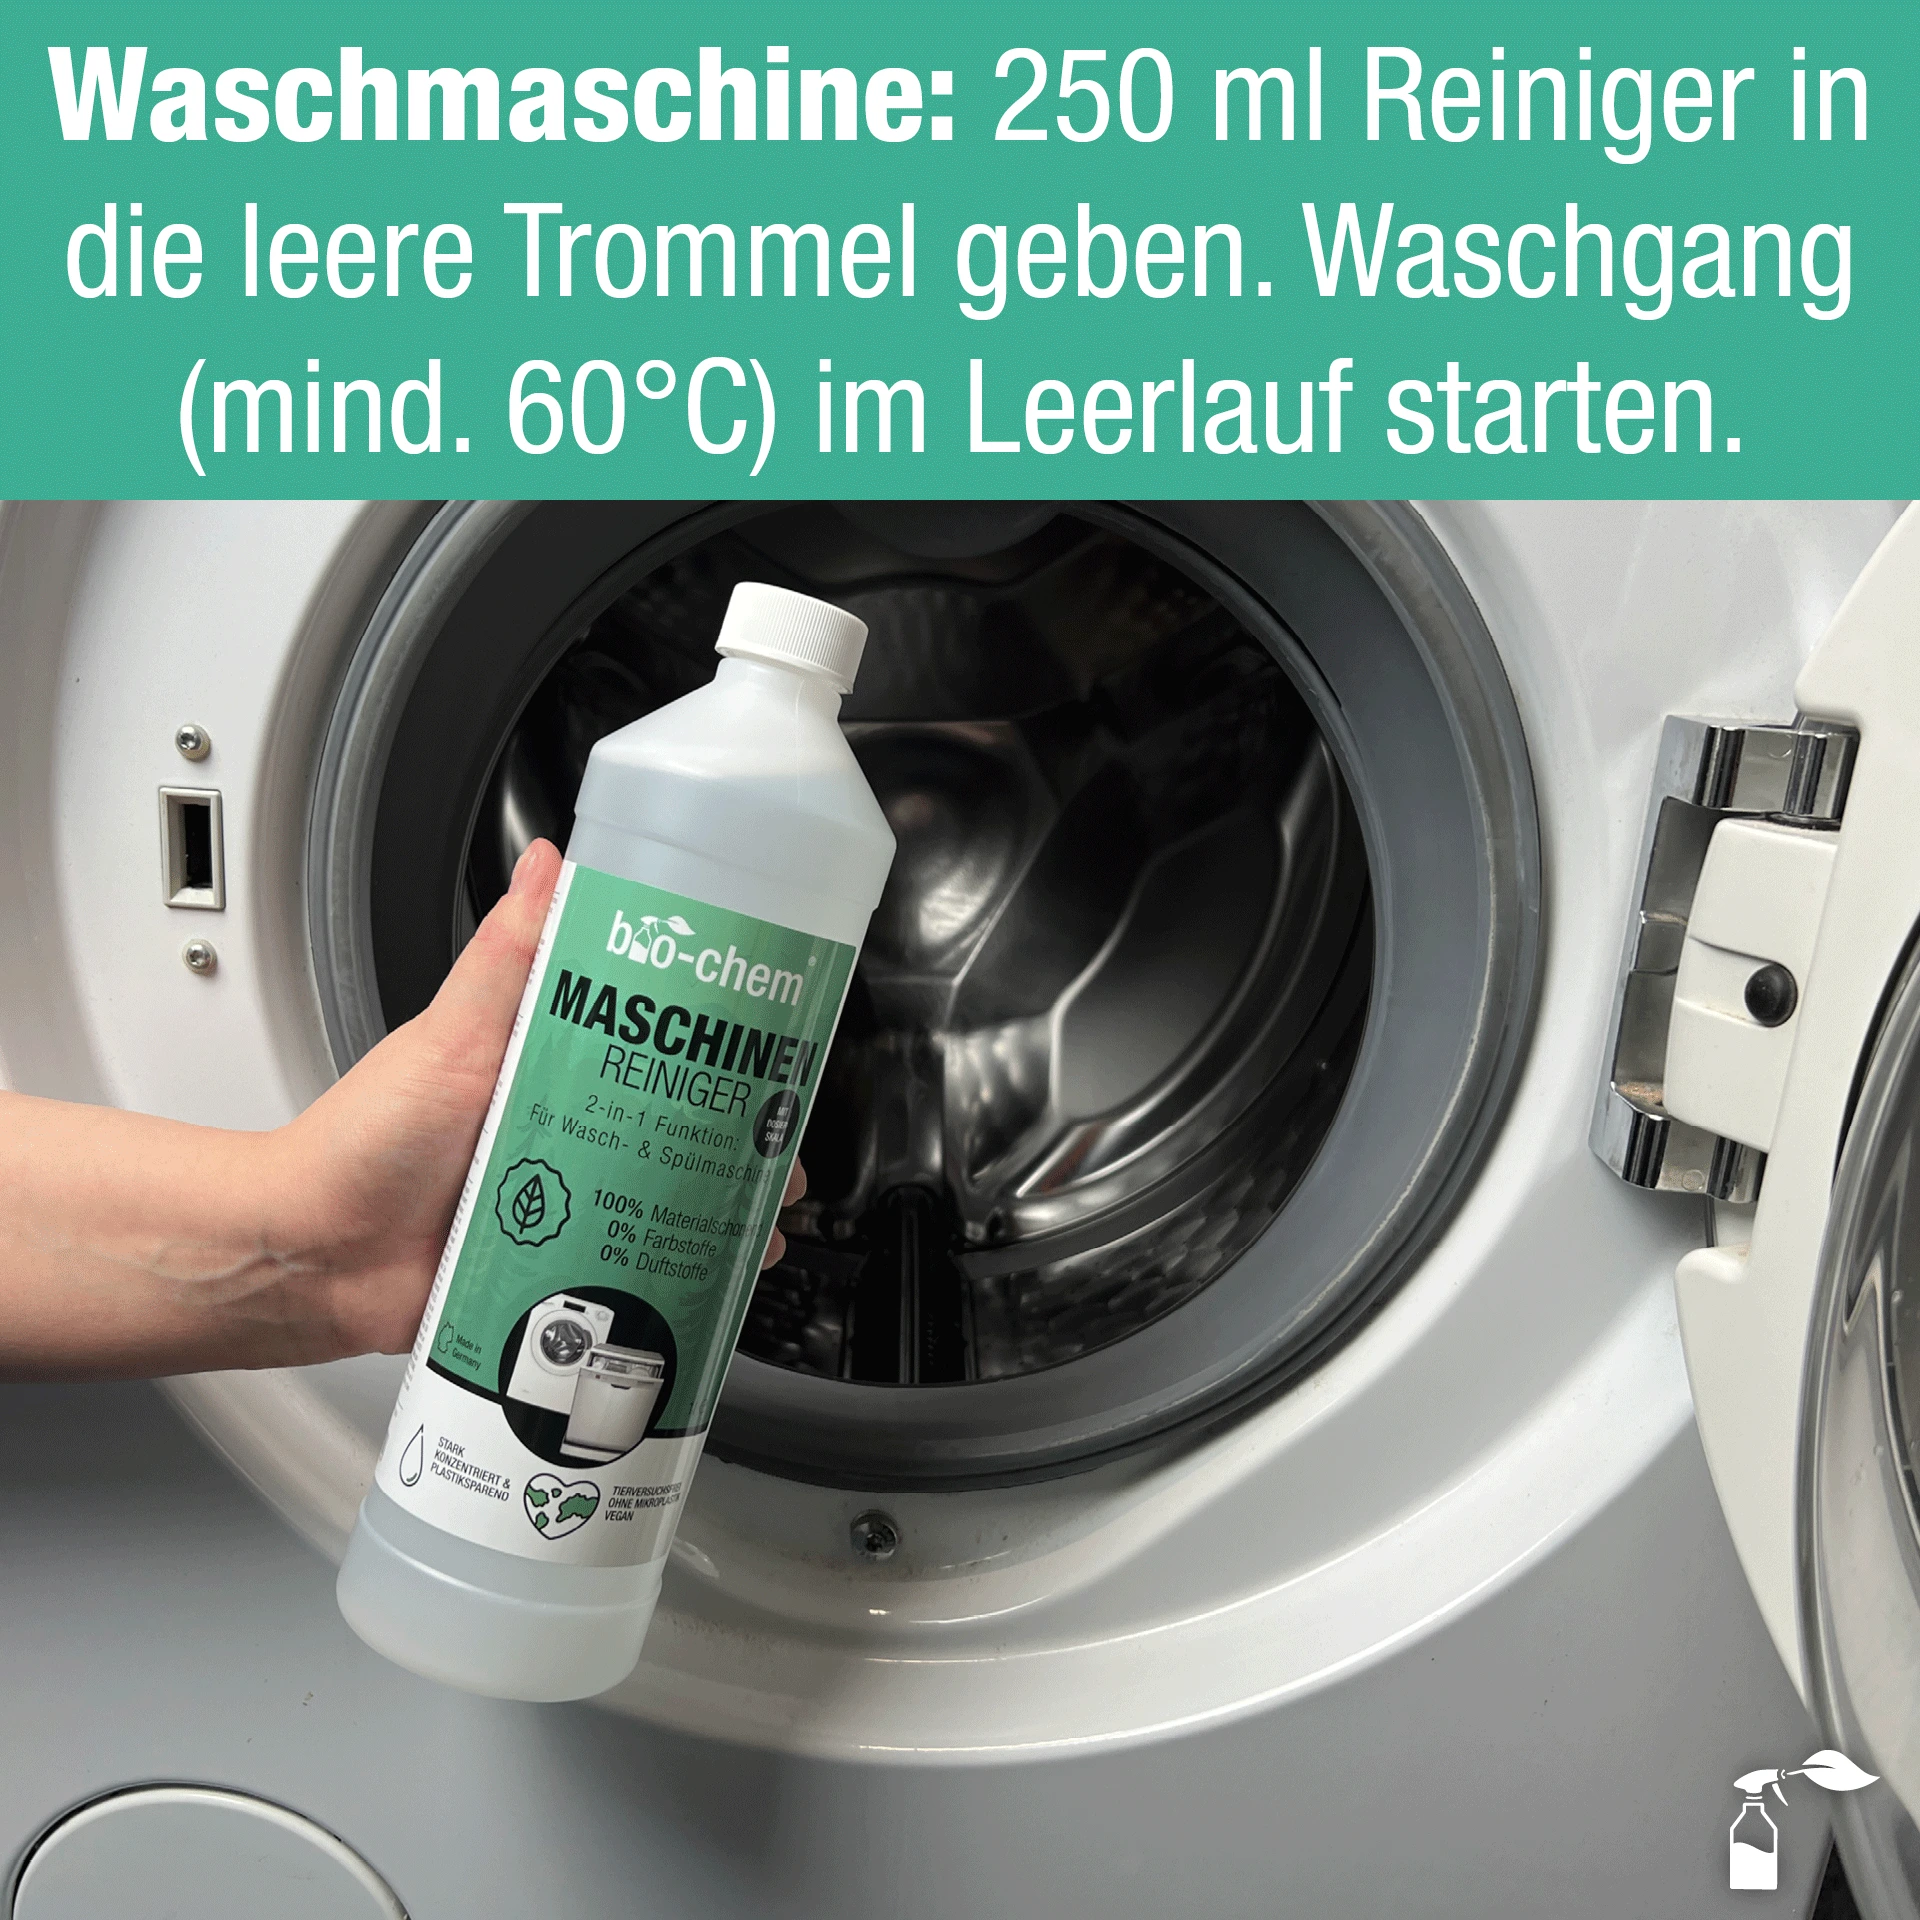 Waschmaschinen-Empfehlung: 250 ml Reiniger in die leere Trommel geben und Waschgang starten. 